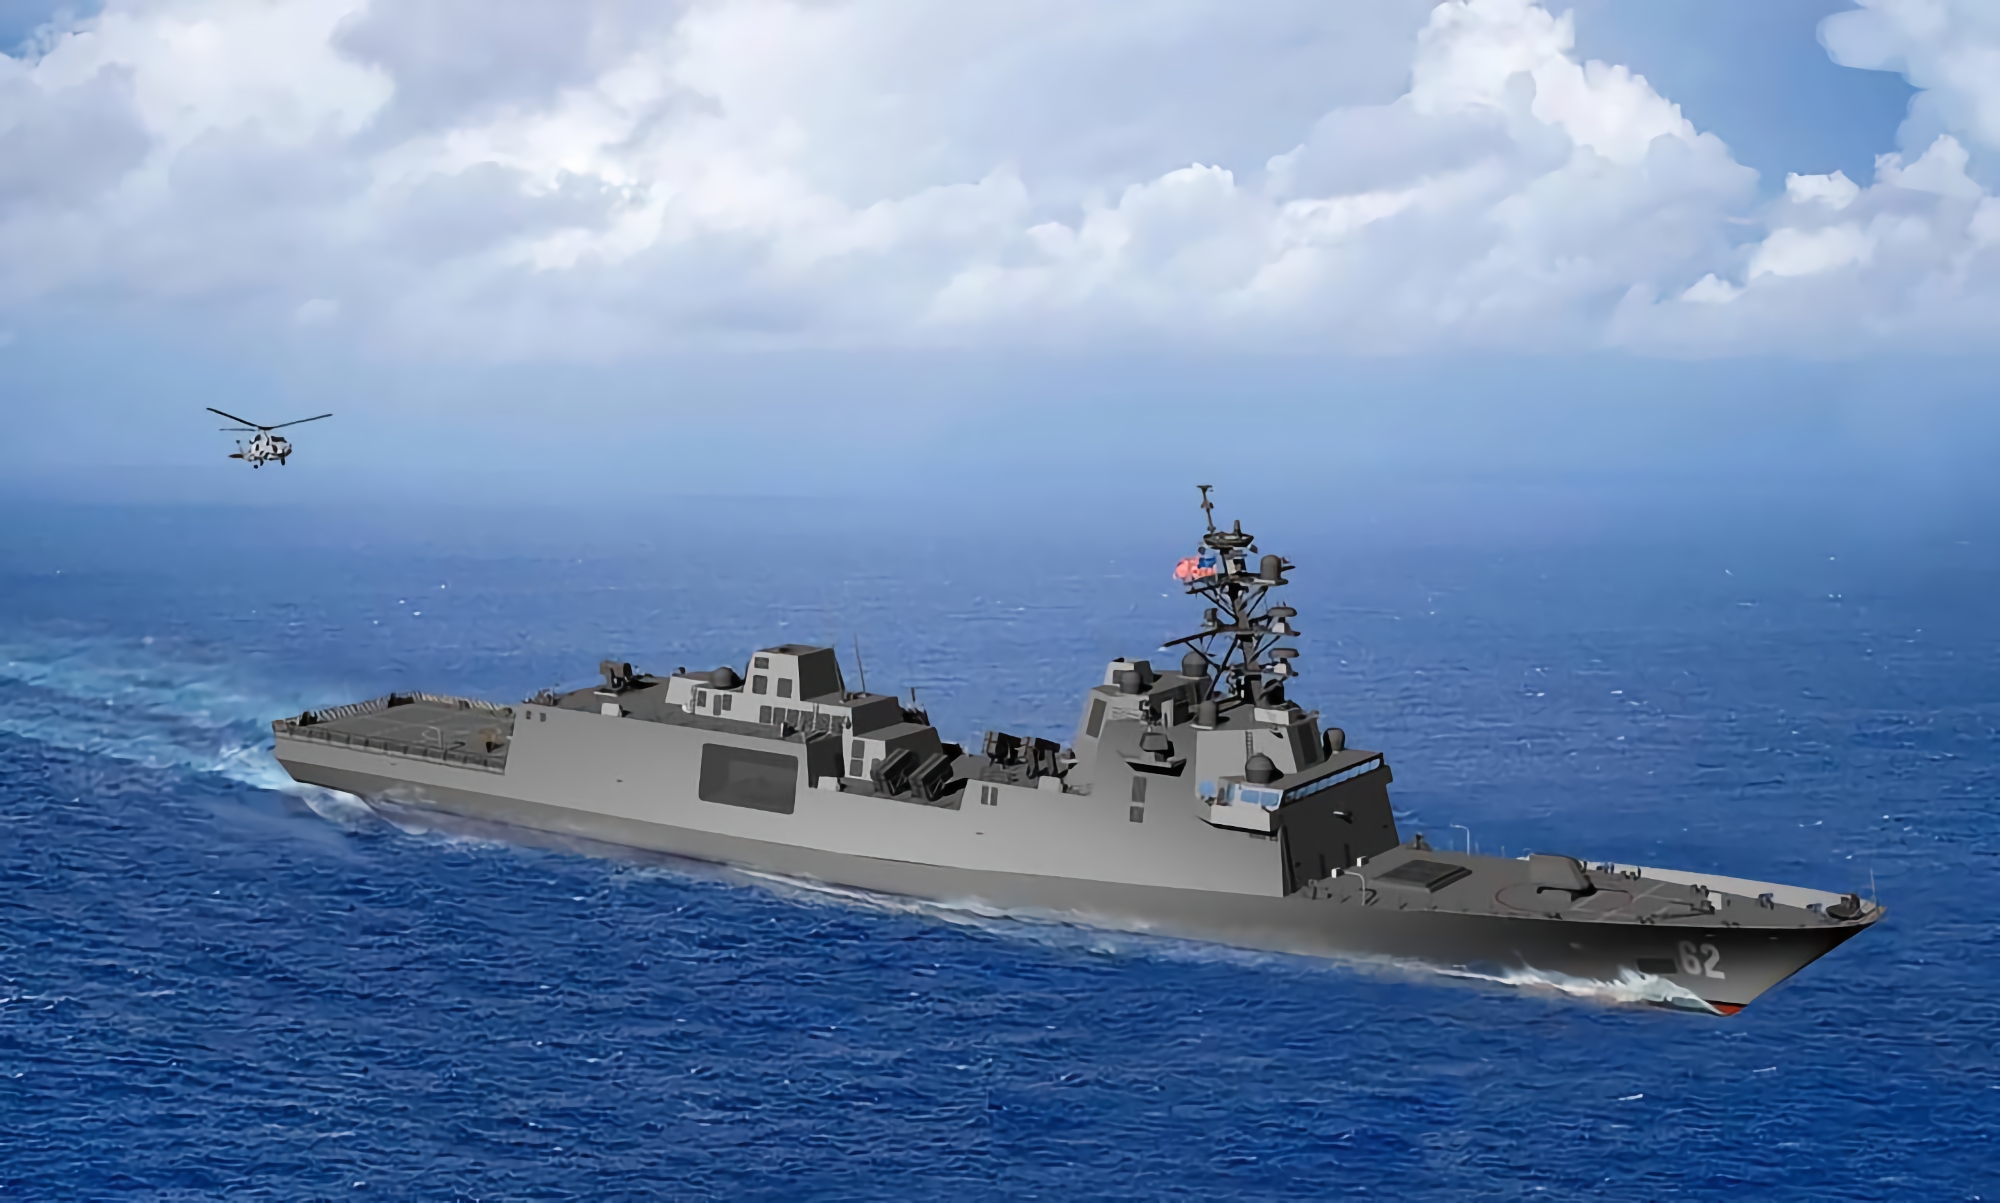 Fincantieri Marinette Marine rozpoczęła budowę fregaty USS Constellation (FFG 62) dla Marynarki Wojennej USA kosztem 1,28 miliarda dolarów